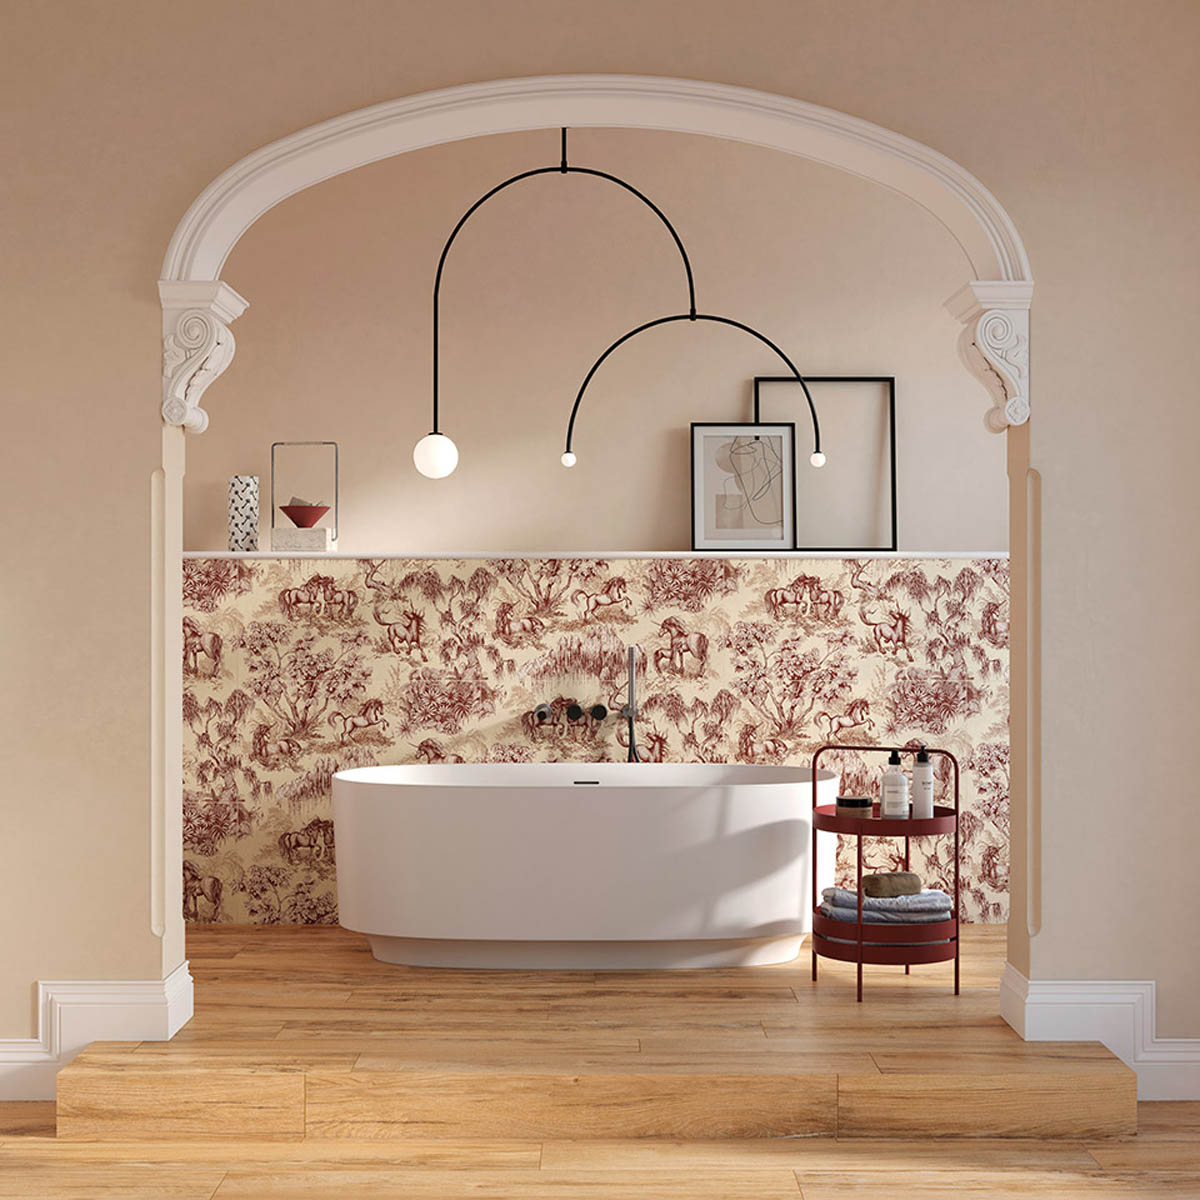 Badkamer inrichting ideeen stoel decoratie badkuip decoratie